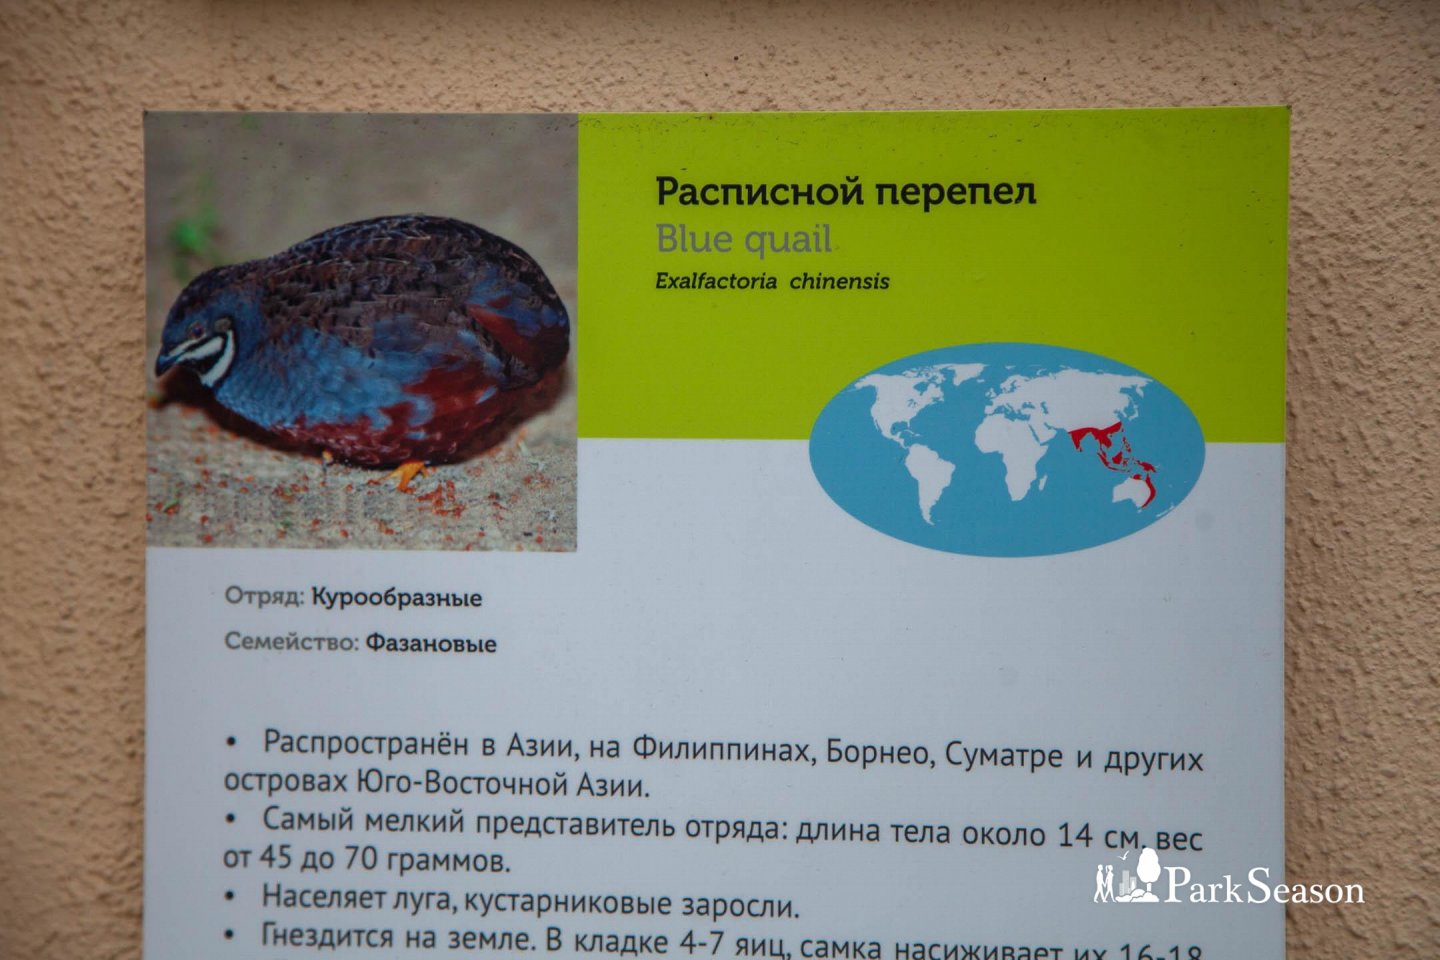 Вьюрковые птицы, Московский зоопарк, Москва — ParkSeason